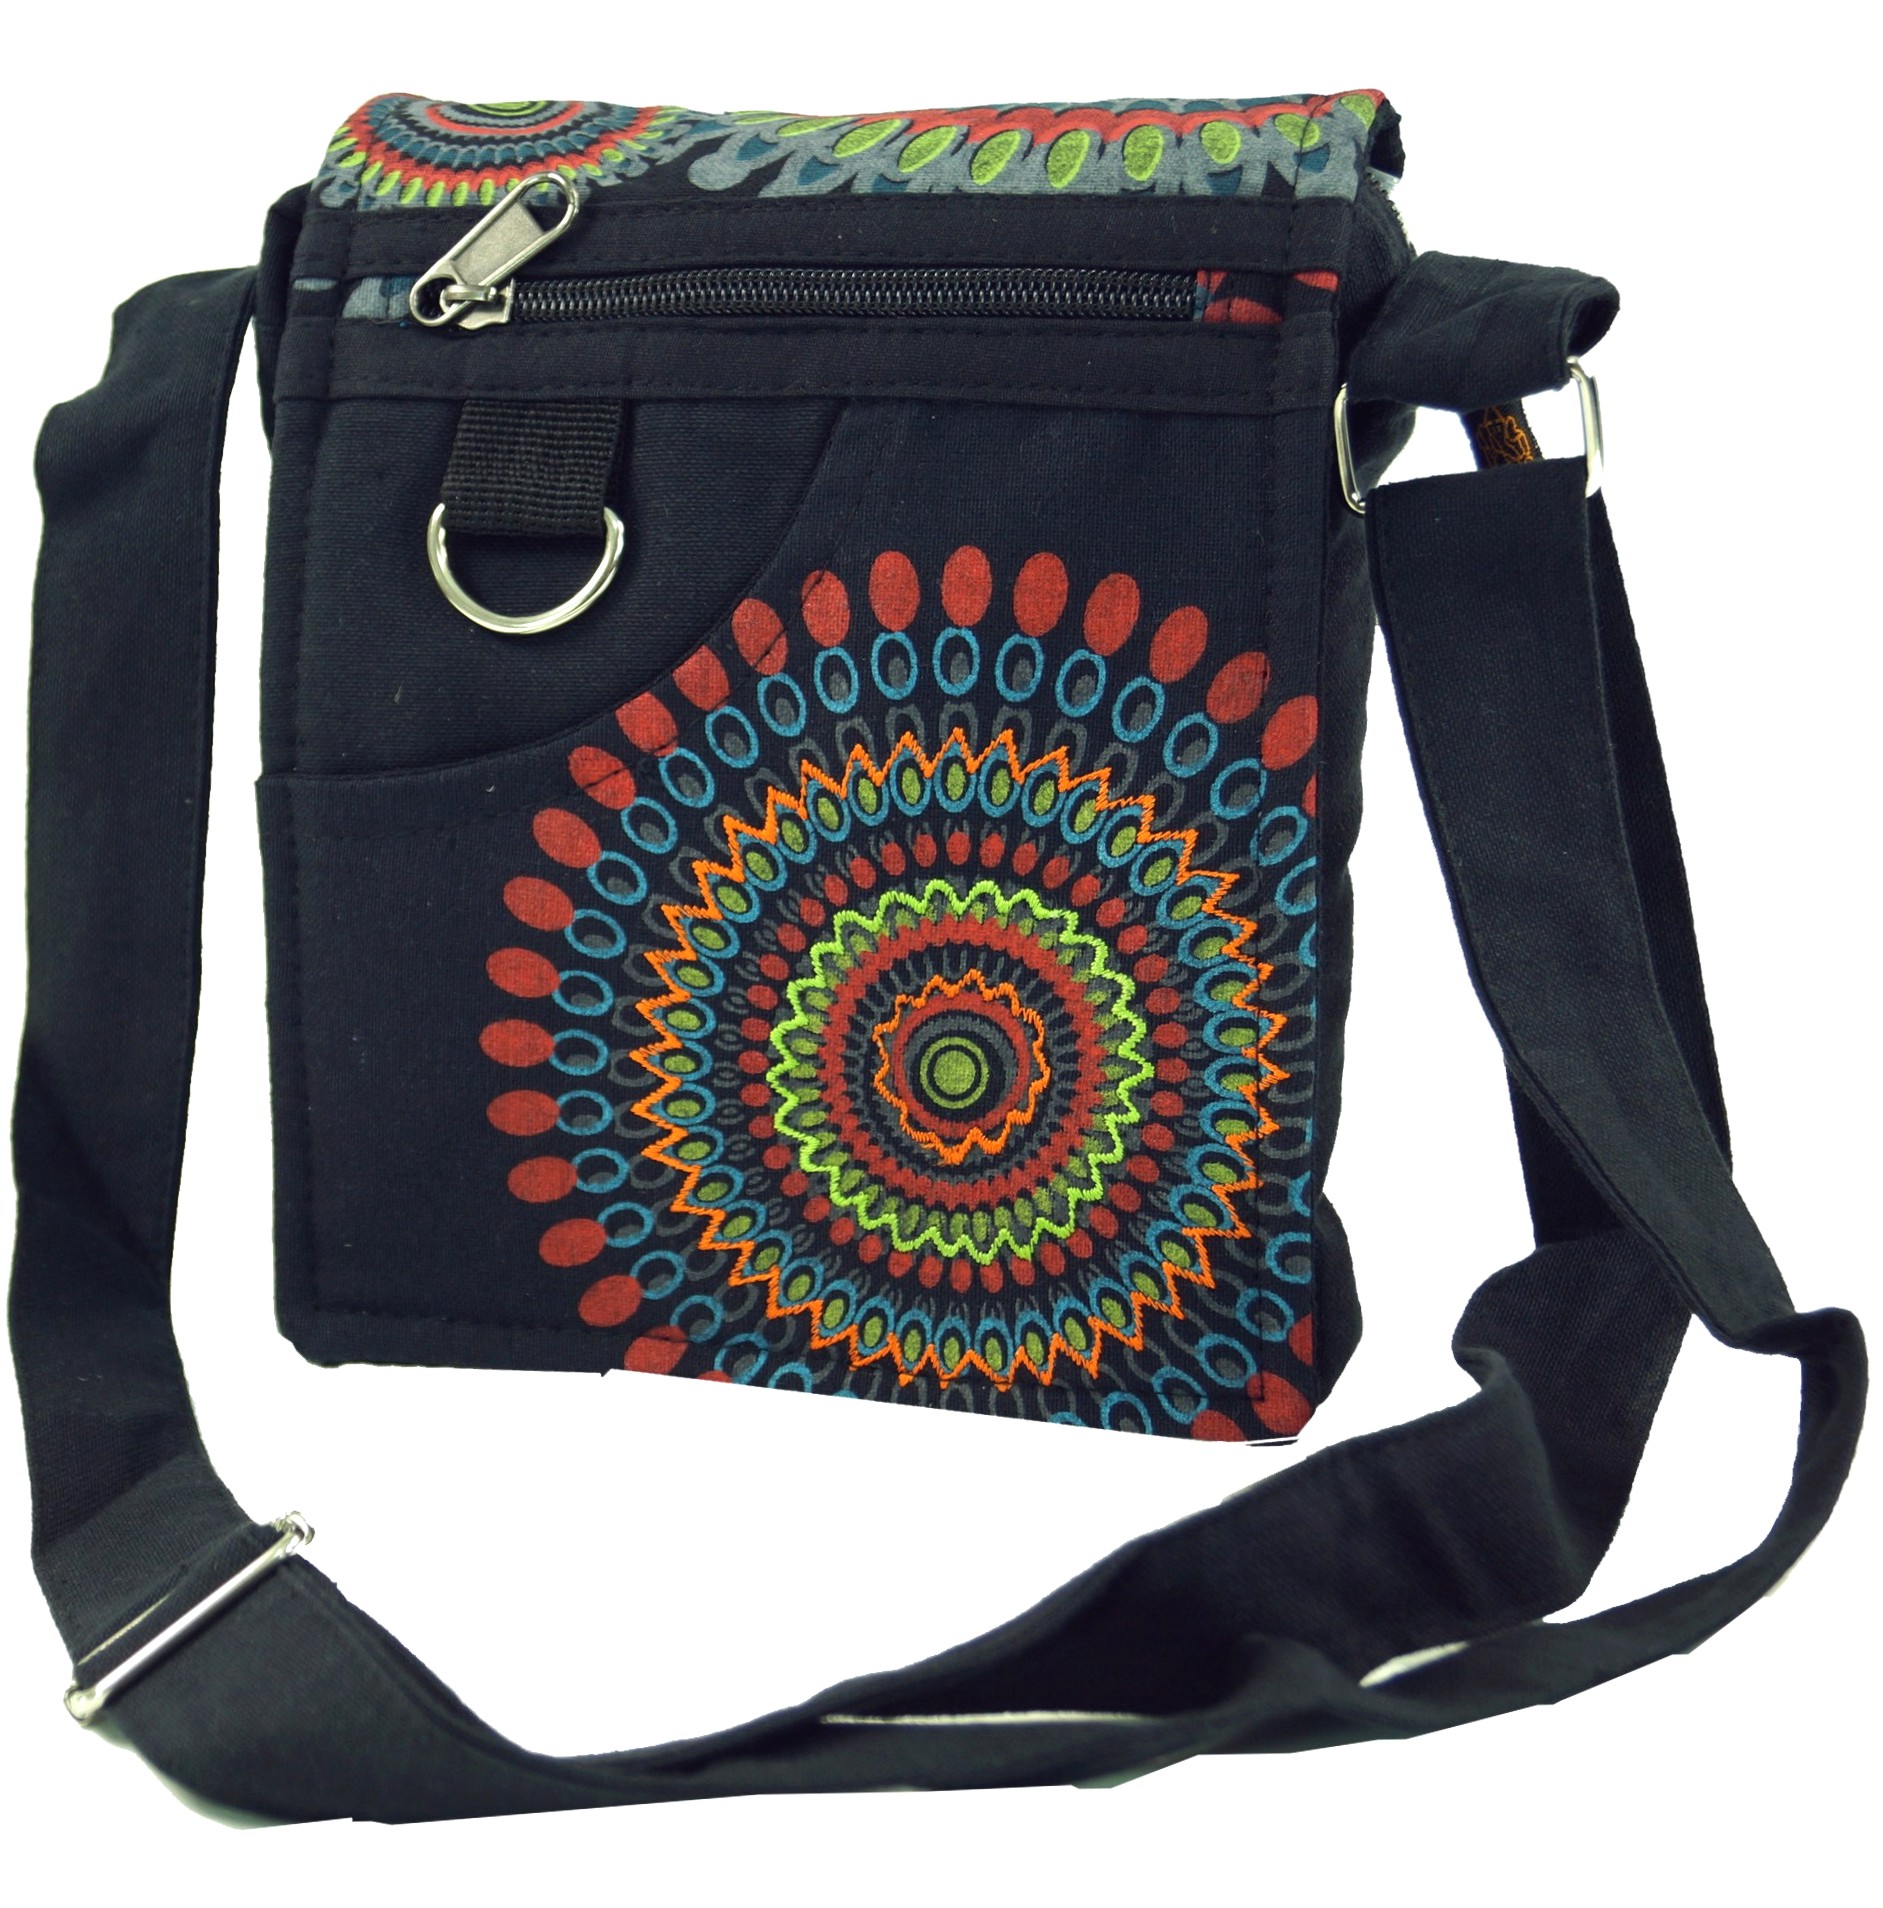 Schultertasche Hippie Tasche Goa Tasche schwarz bunt